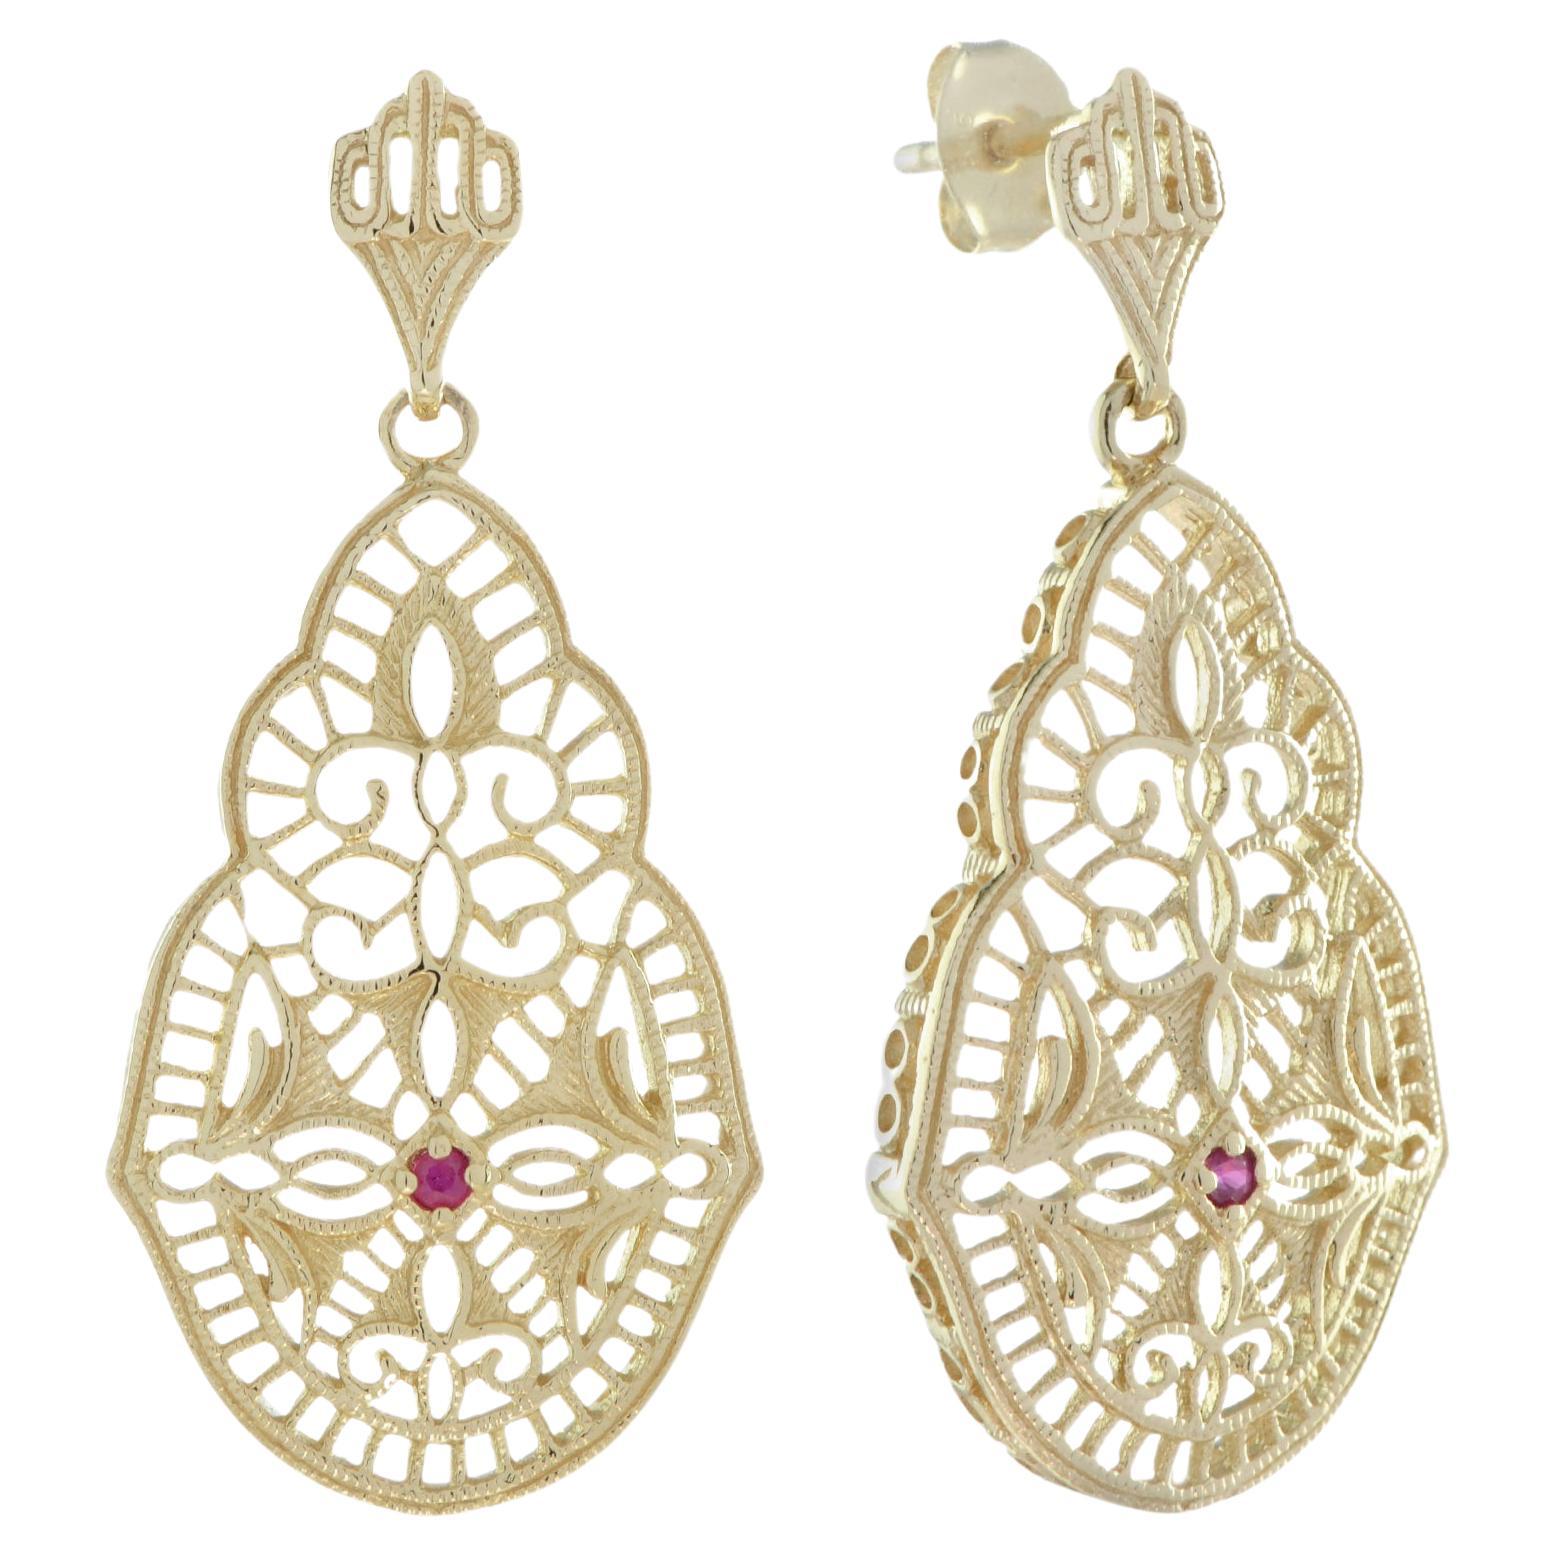 Boucles d'oreilles pendantes en or massif 9K et filigrane de style vintage avec rubis naturel